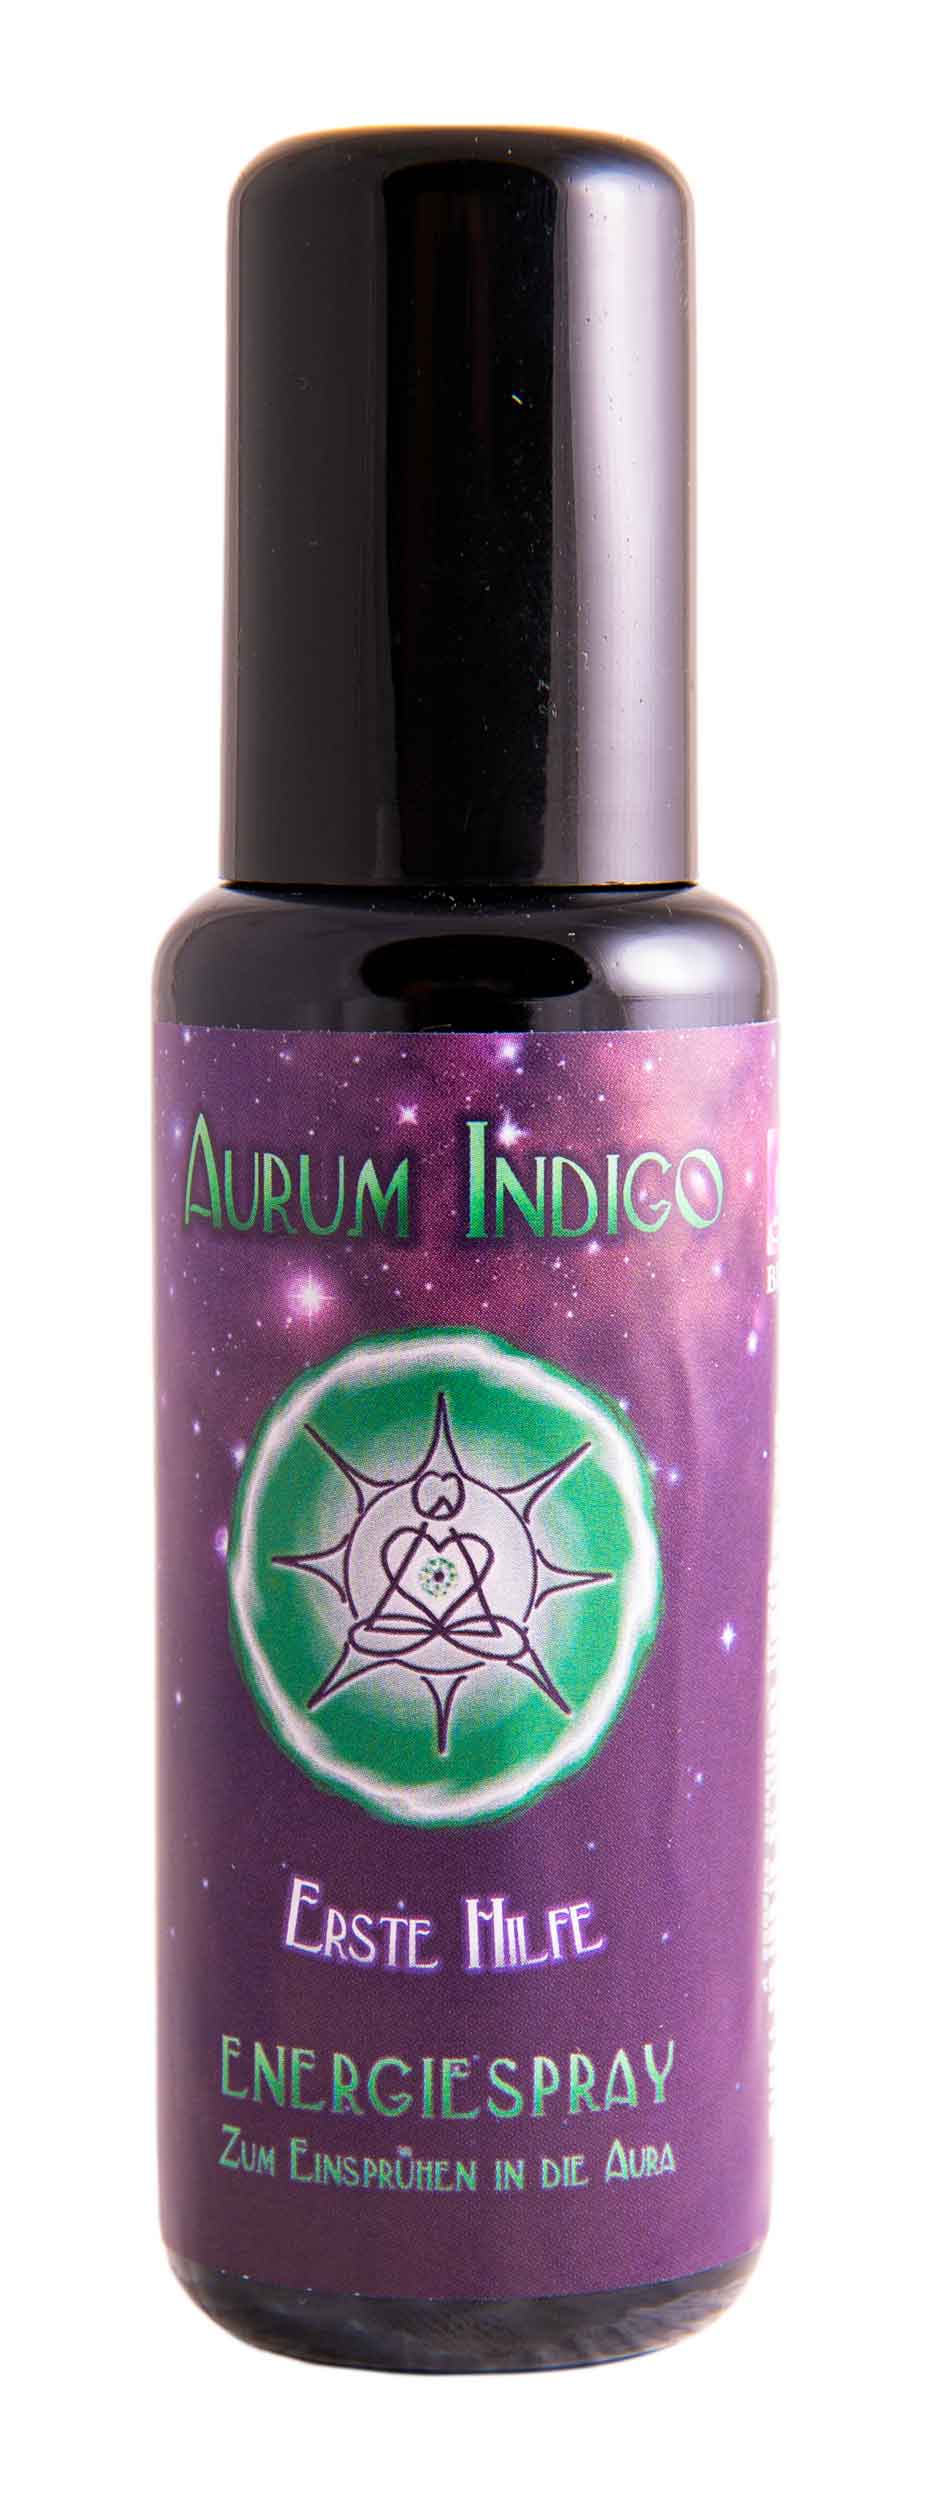 Erste Hilfe - Aurum Indigo Energie Spray 